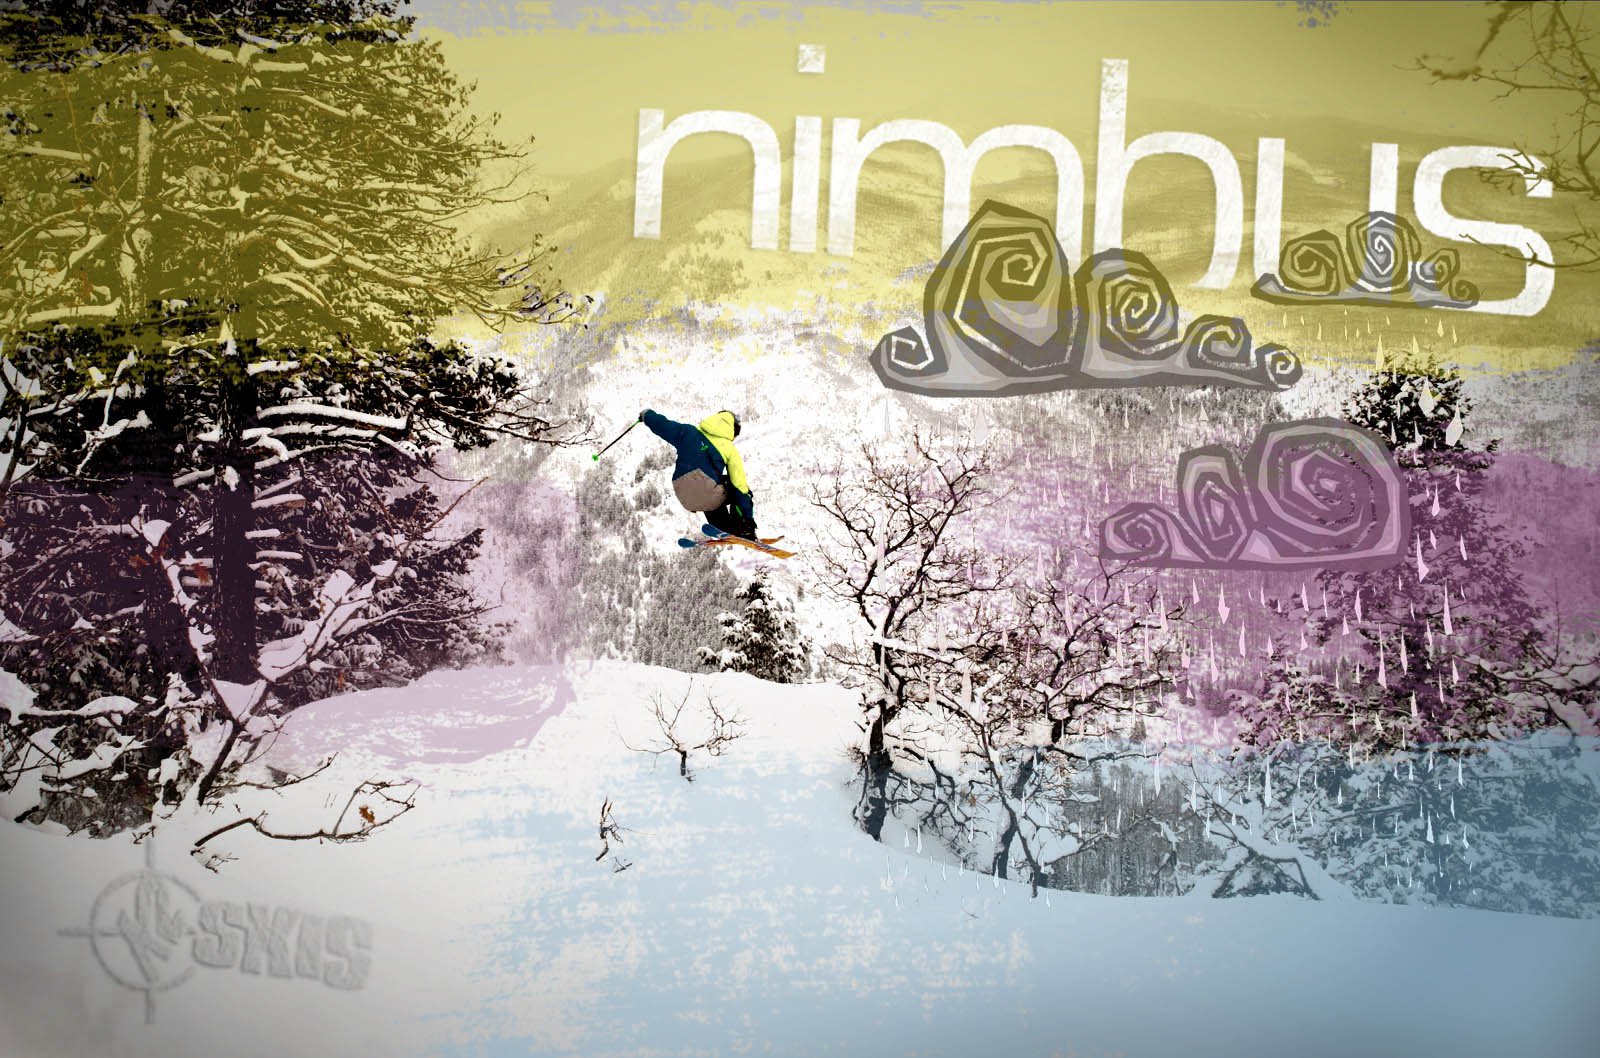 Design for Nimbus contest